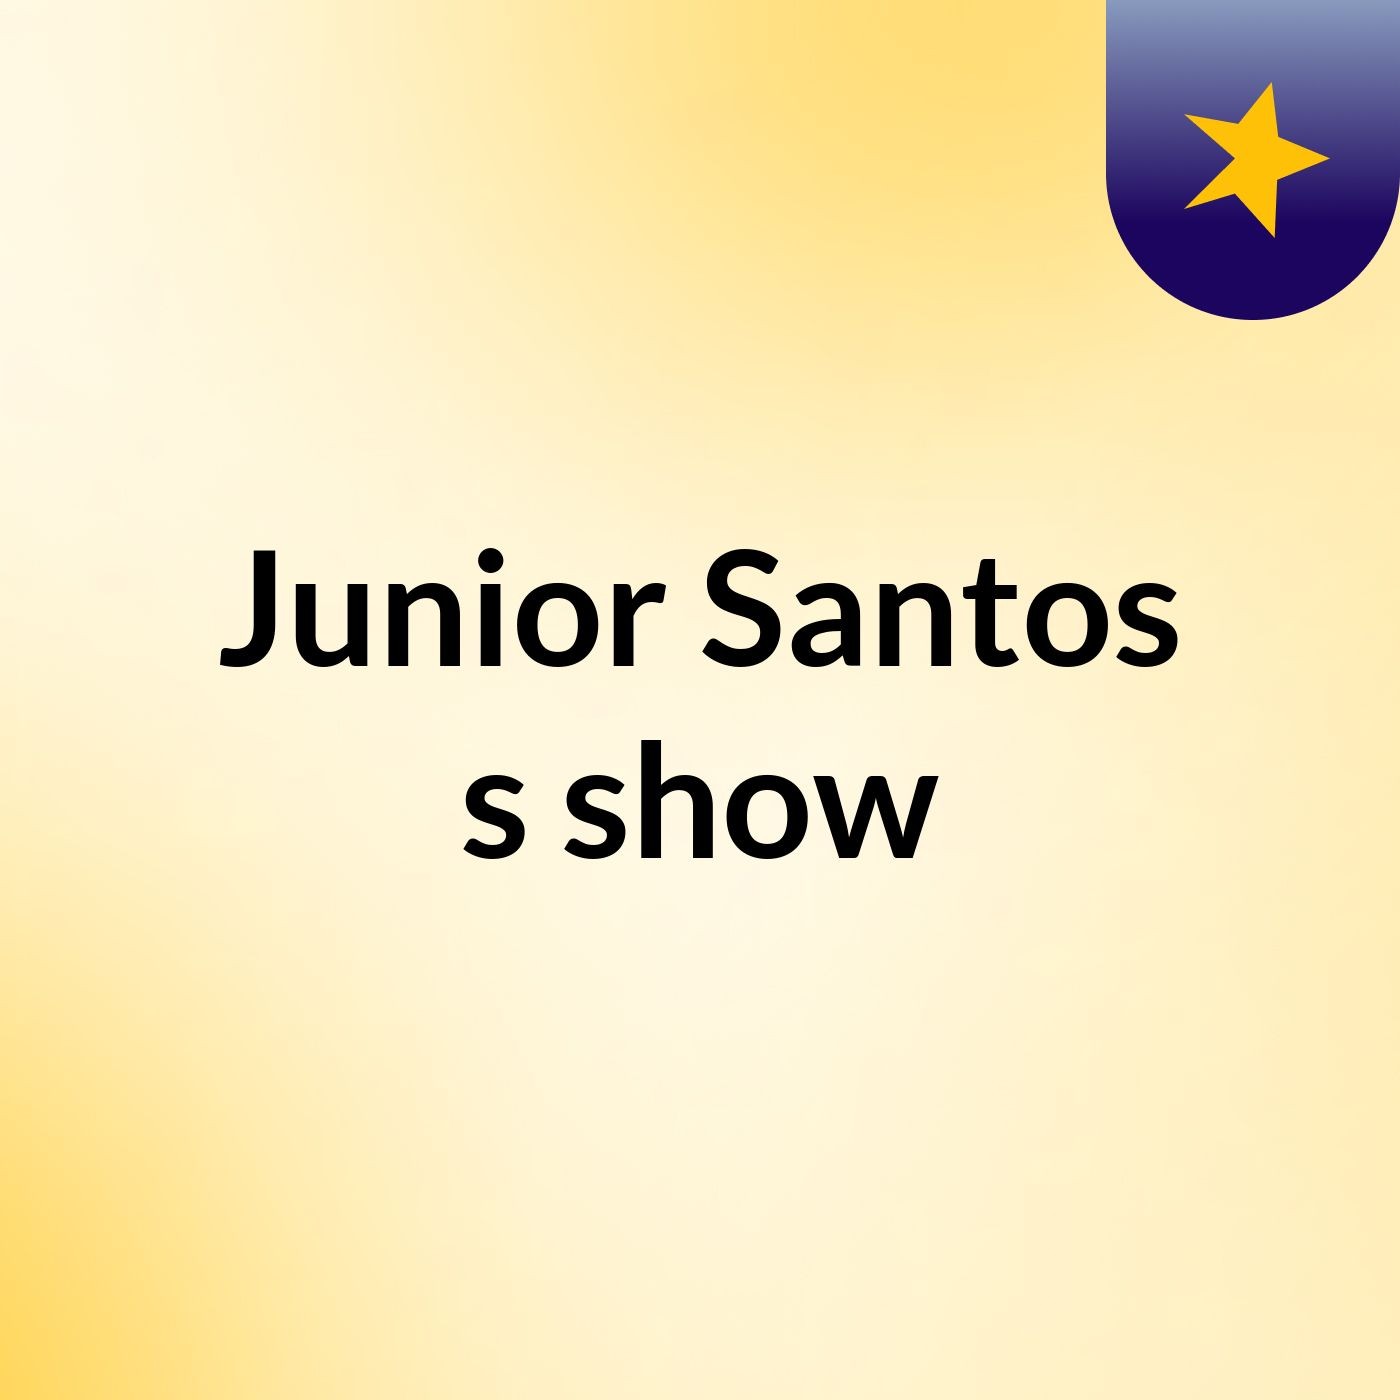 Junior Santos's show